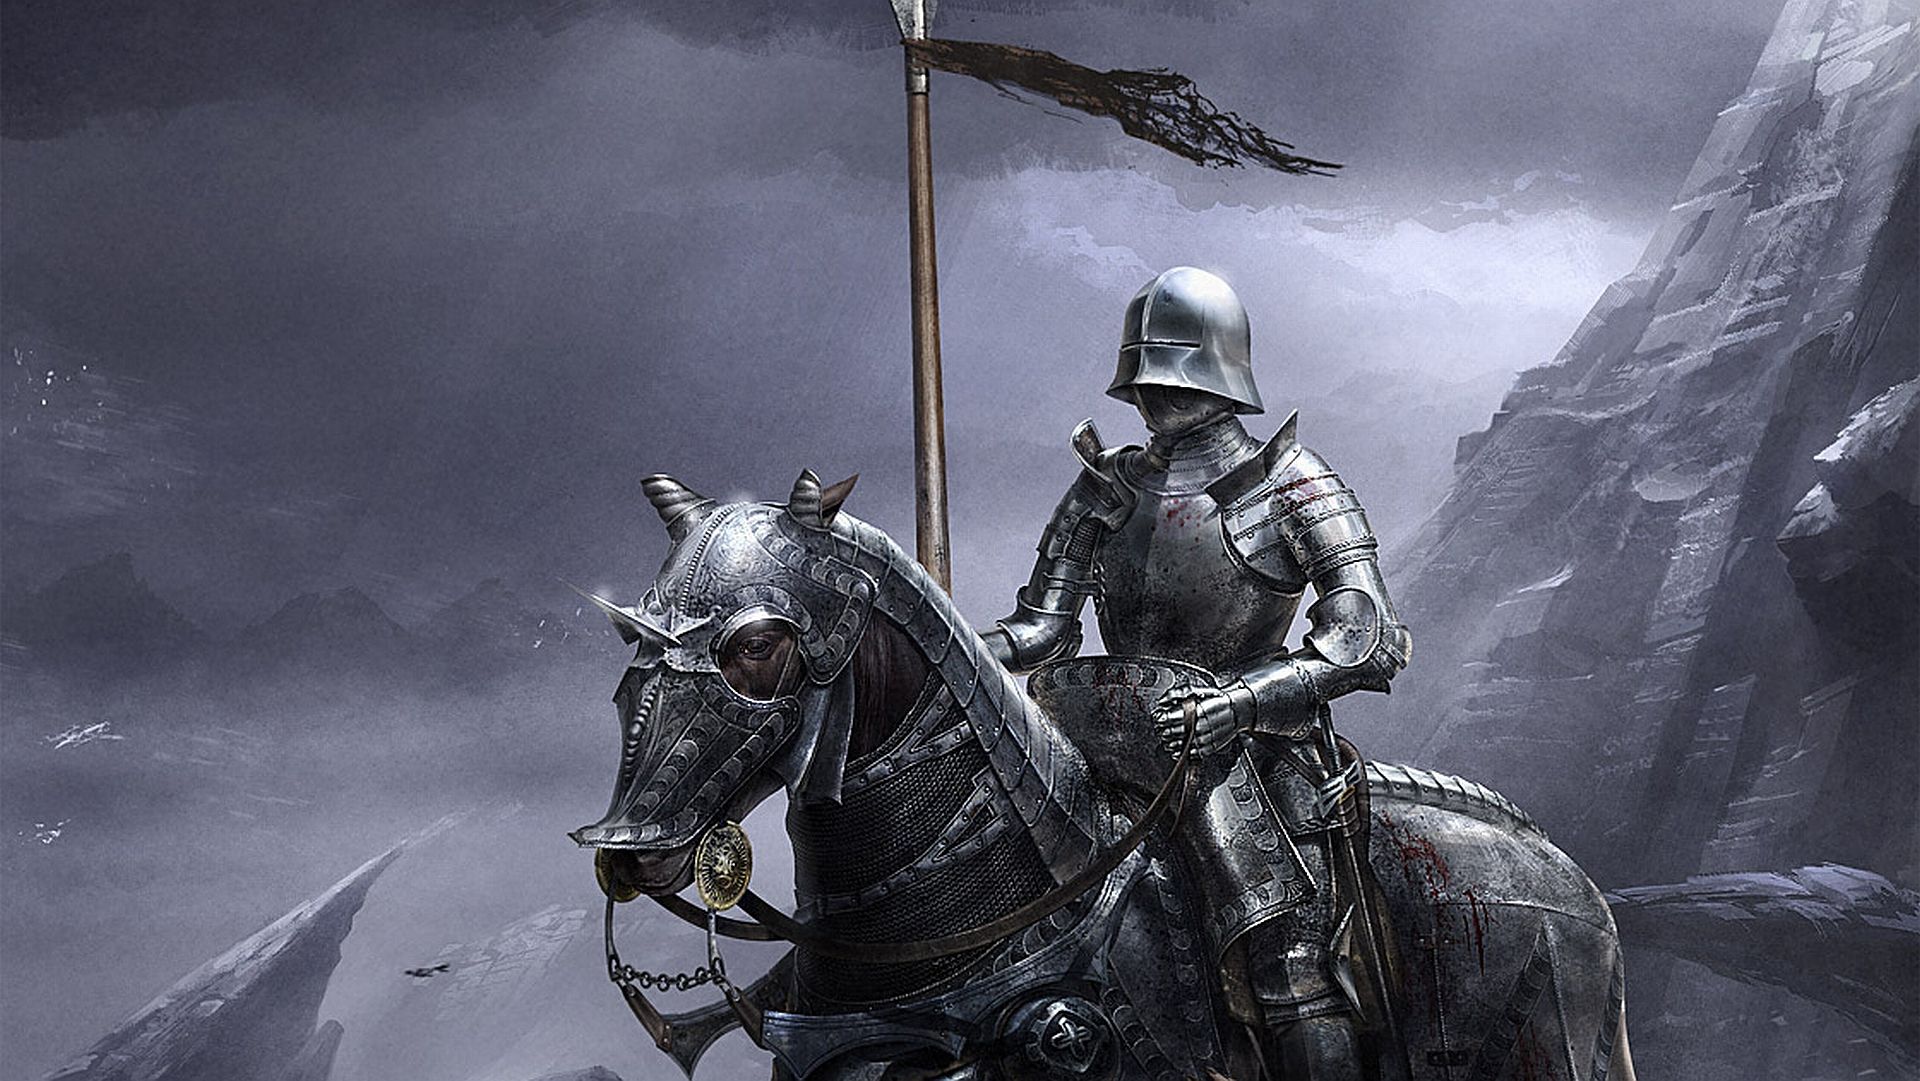 The Forgotten Knight Fantasy Art. Fantasy Wallpaper. Medieval knight, Dark knight wallpaper, Knight